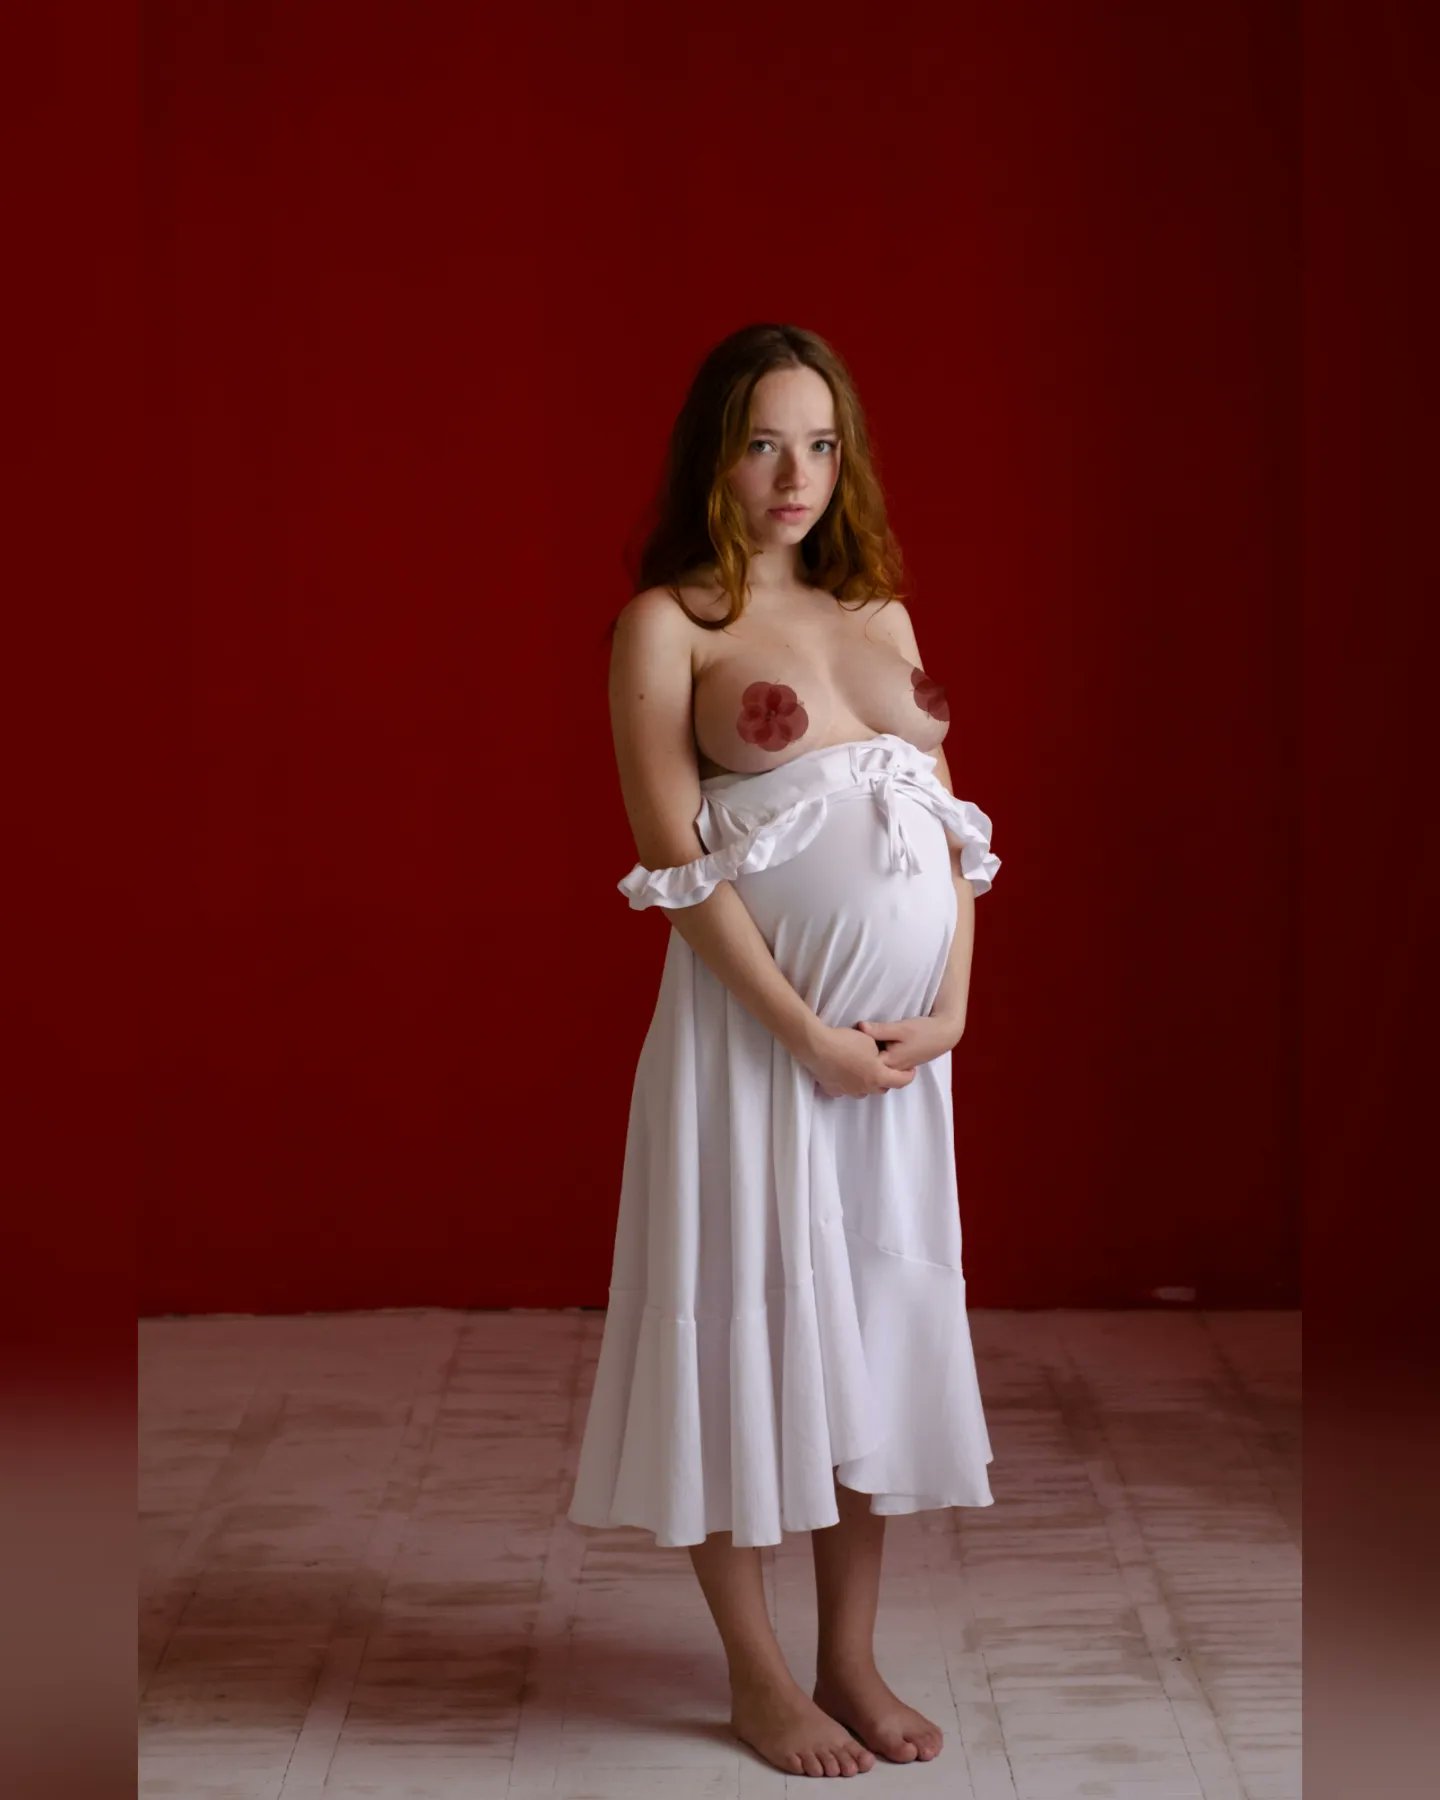 幼齒像學生？烏克蘭人妻《rinaalyys》熱愛裸身有孕也是照樣拍騷照！